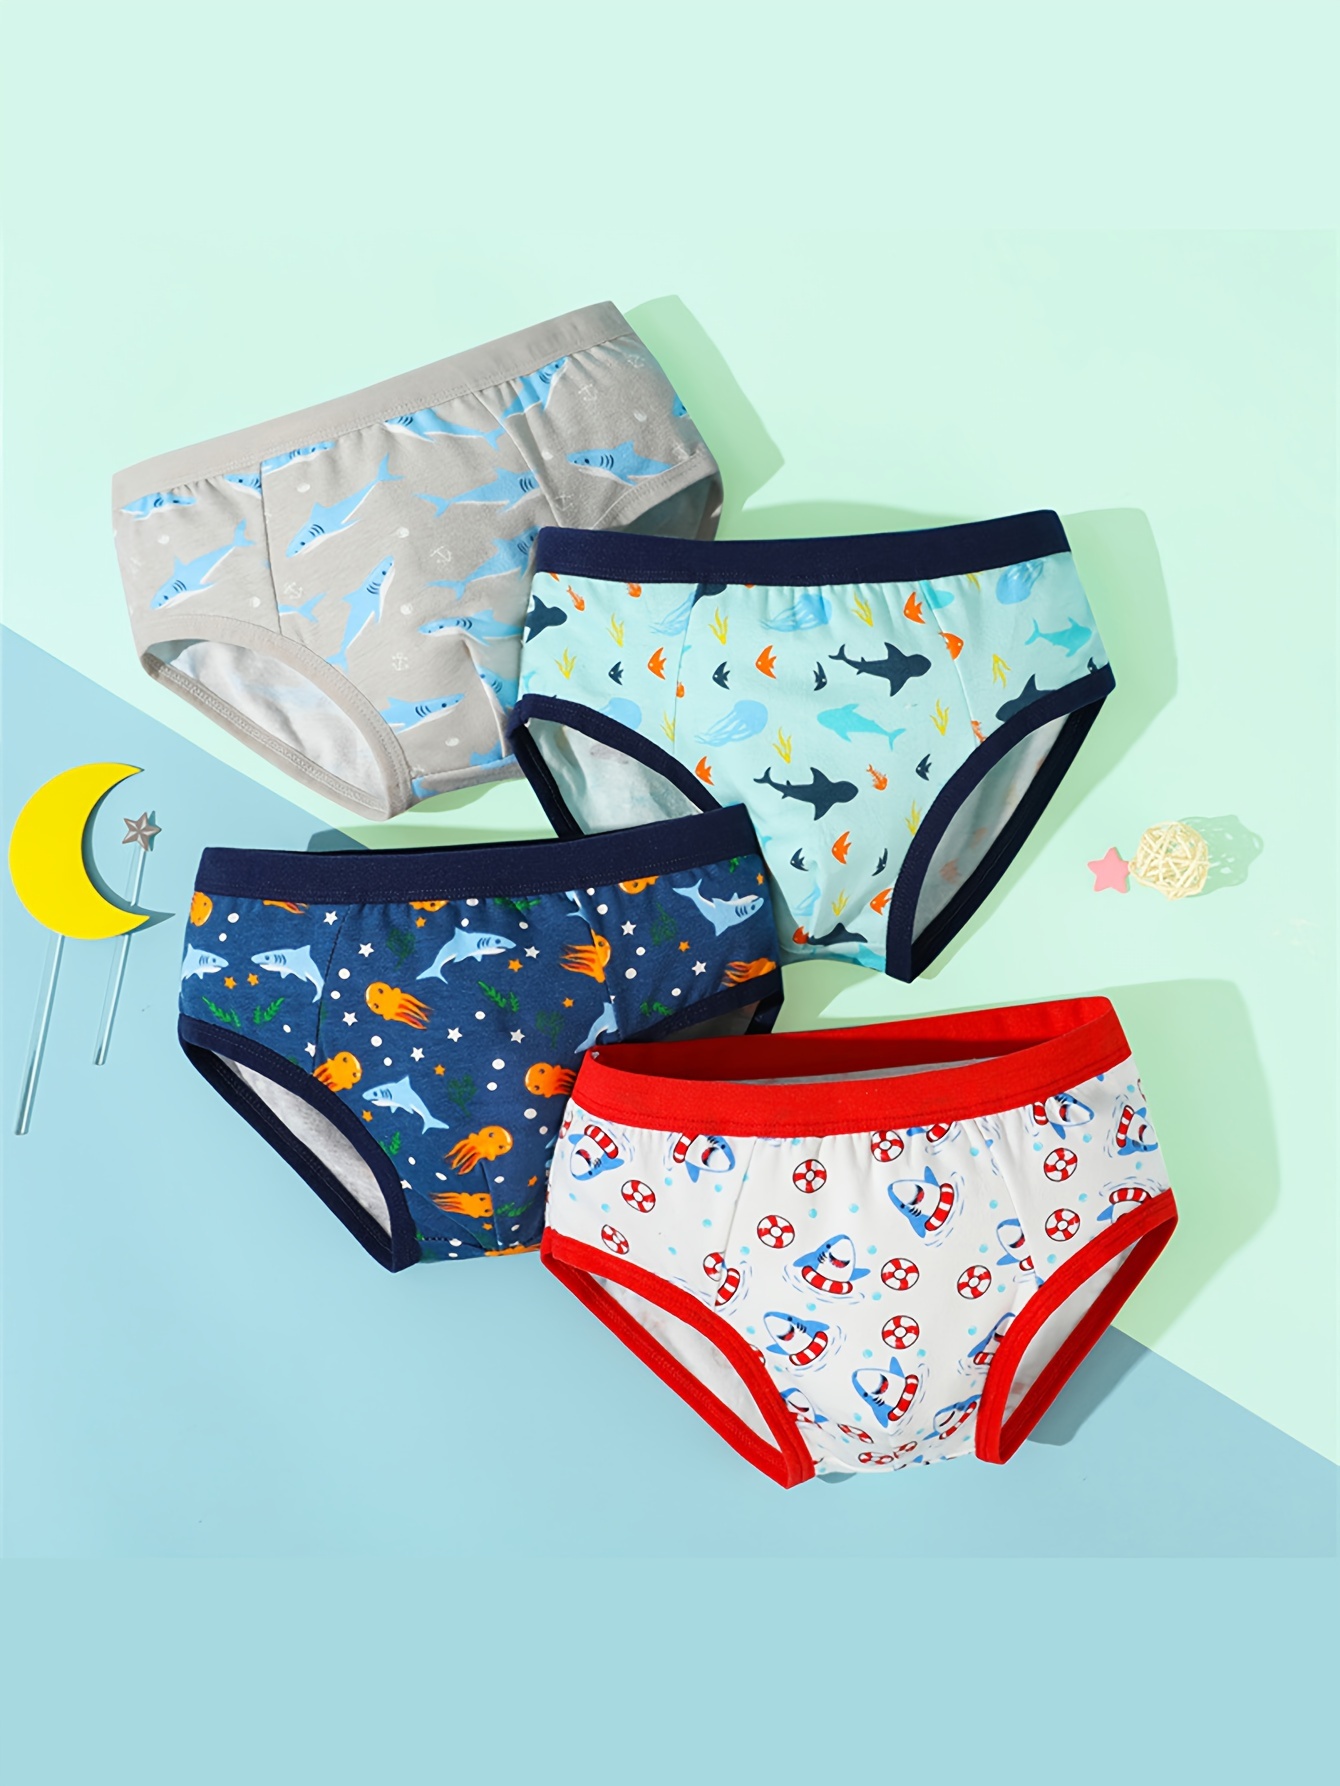 3pcs Boys Cute Dinosaur Graphic Print Breathable Soft Cotton Briefs  Underwear Clothes